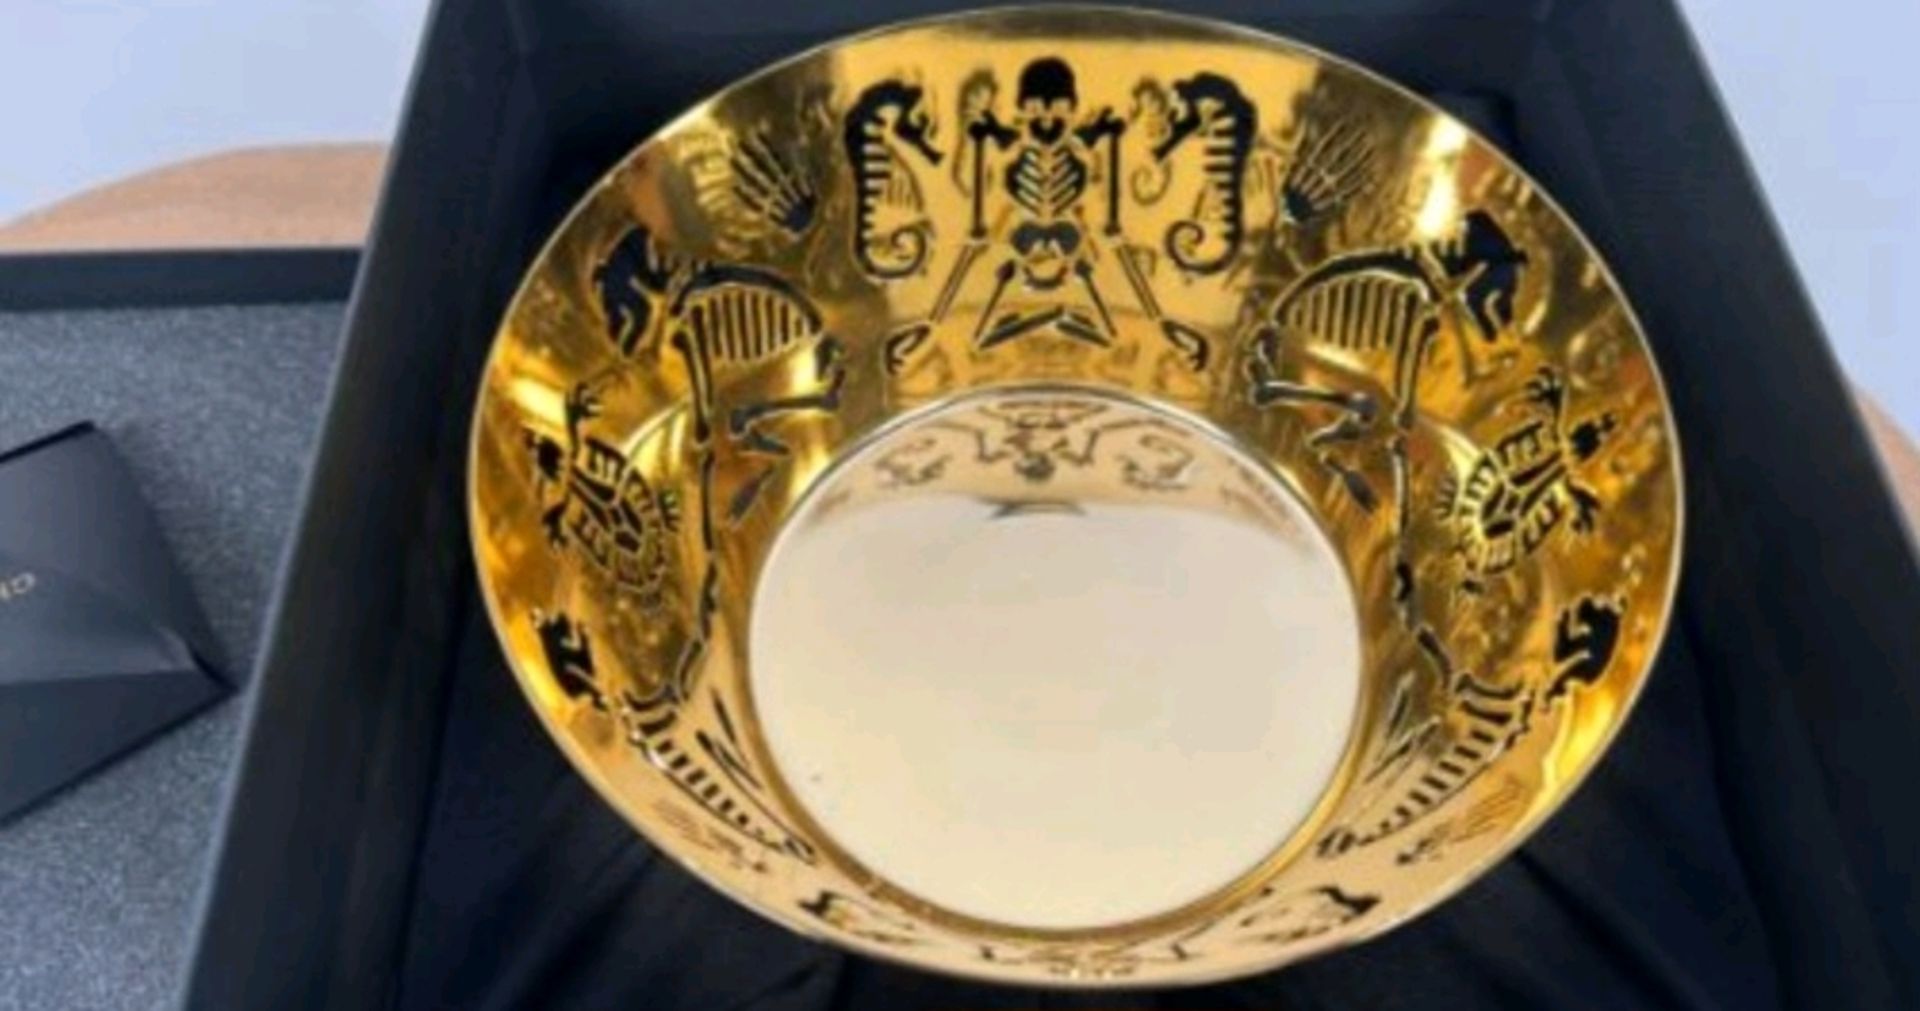 Ghidni 1961 Perished Medium Bowl Polished Gold - Image 4 of 4